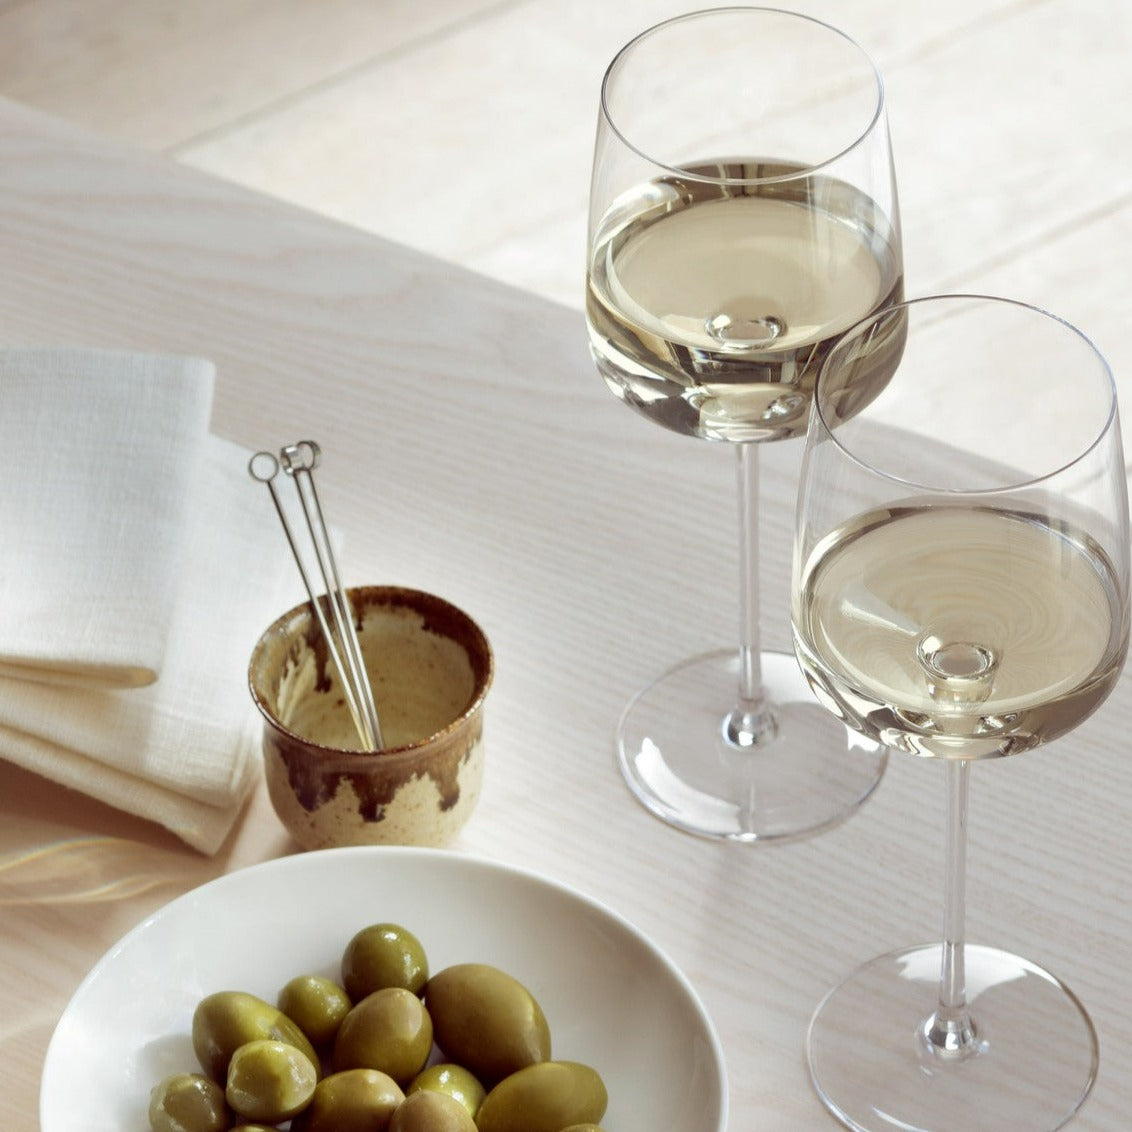 Metropolitan White Wine Glass, Set of 4